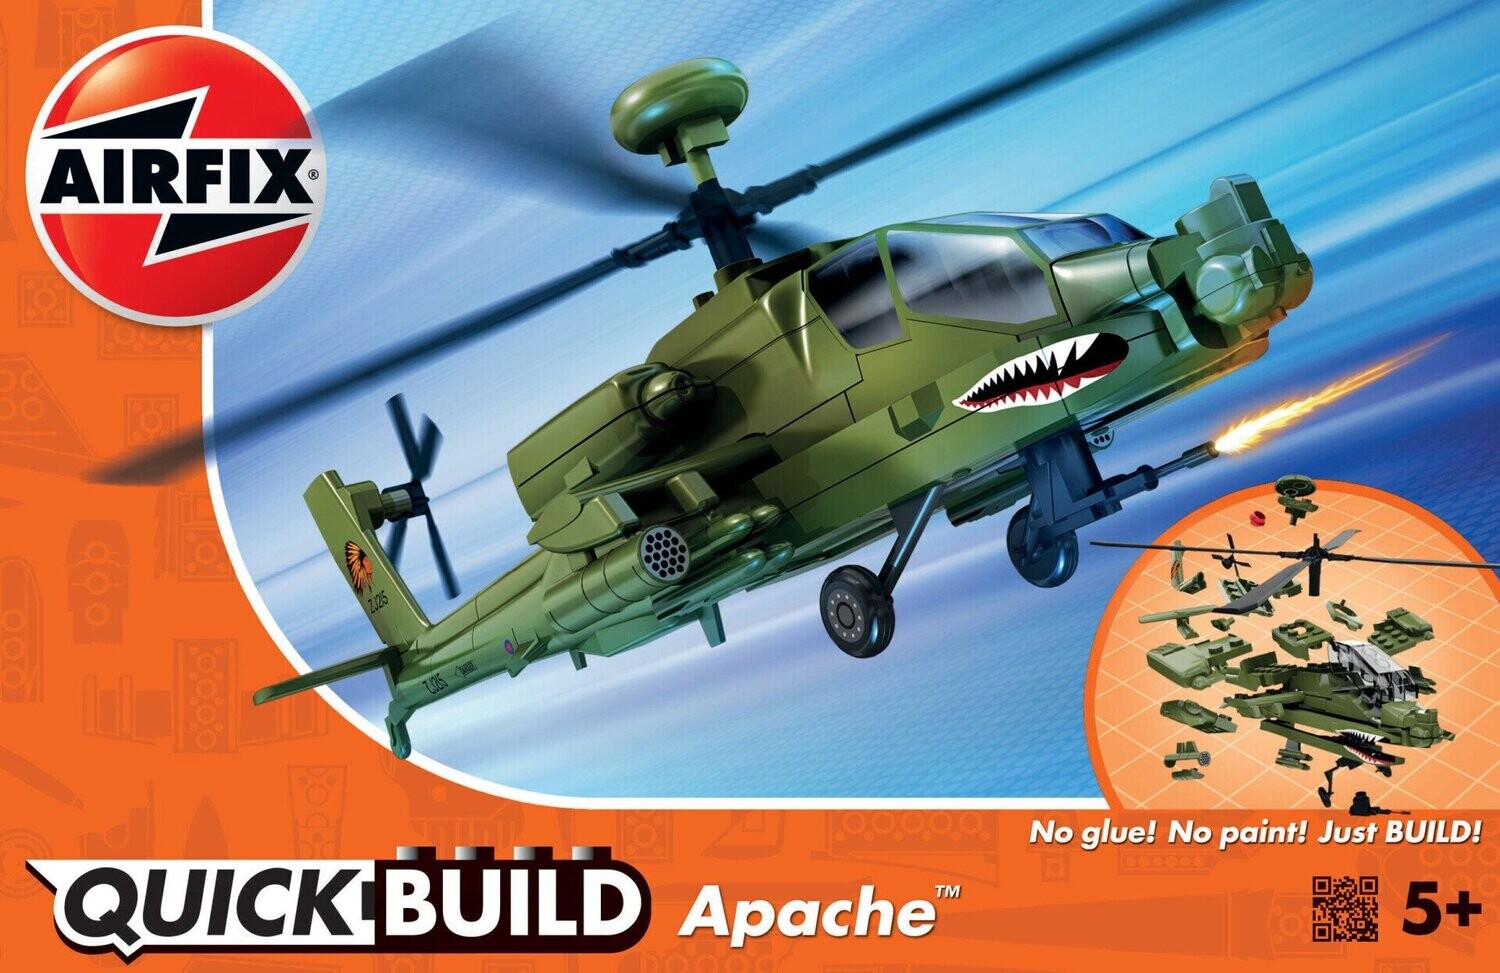 Airfix J6004 QUICKBUILD Apache